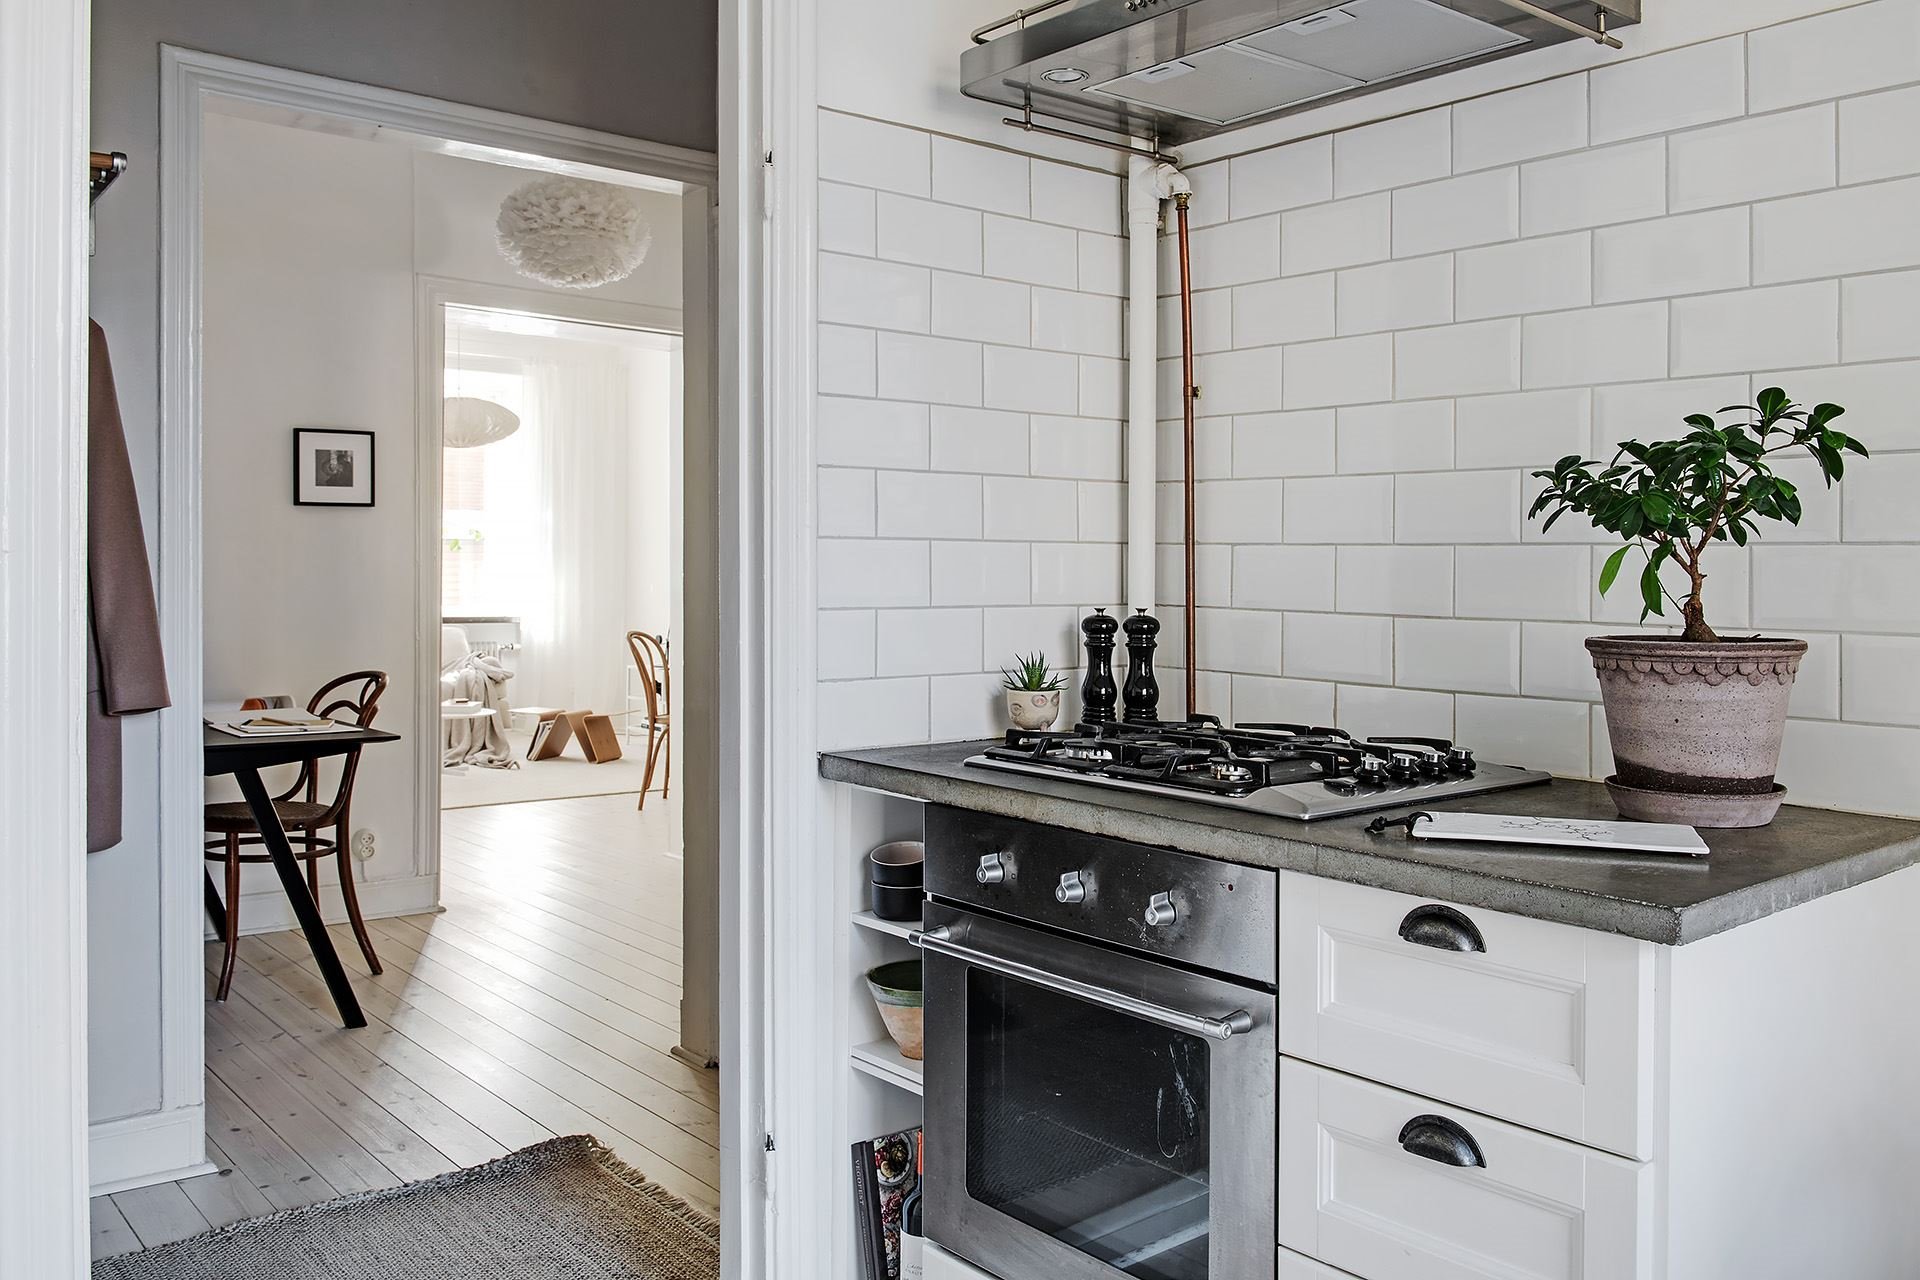 Casa con decoracion de interiores de estilo nordico cocina con fogones